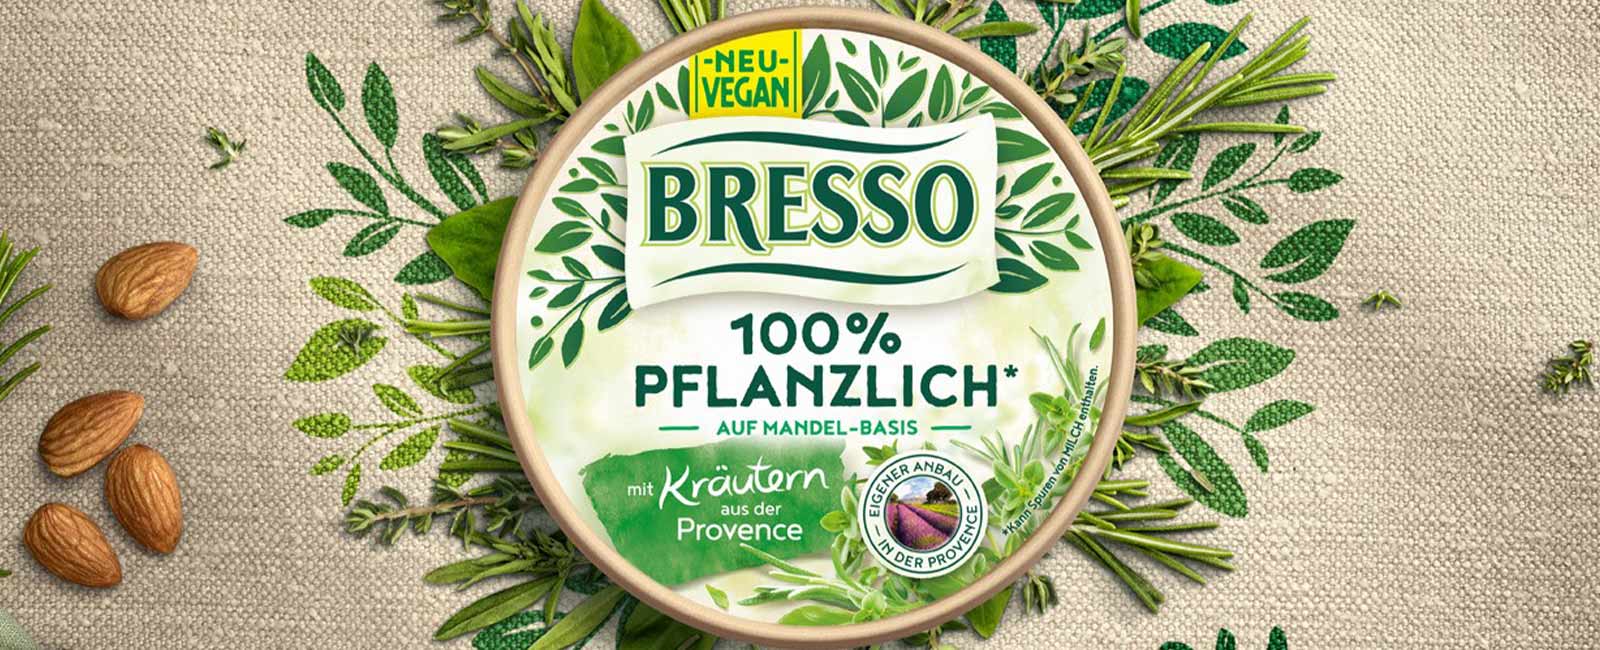 BRESSO 100% PFLANZLICH – alle Infos zum veganen Frischkäse